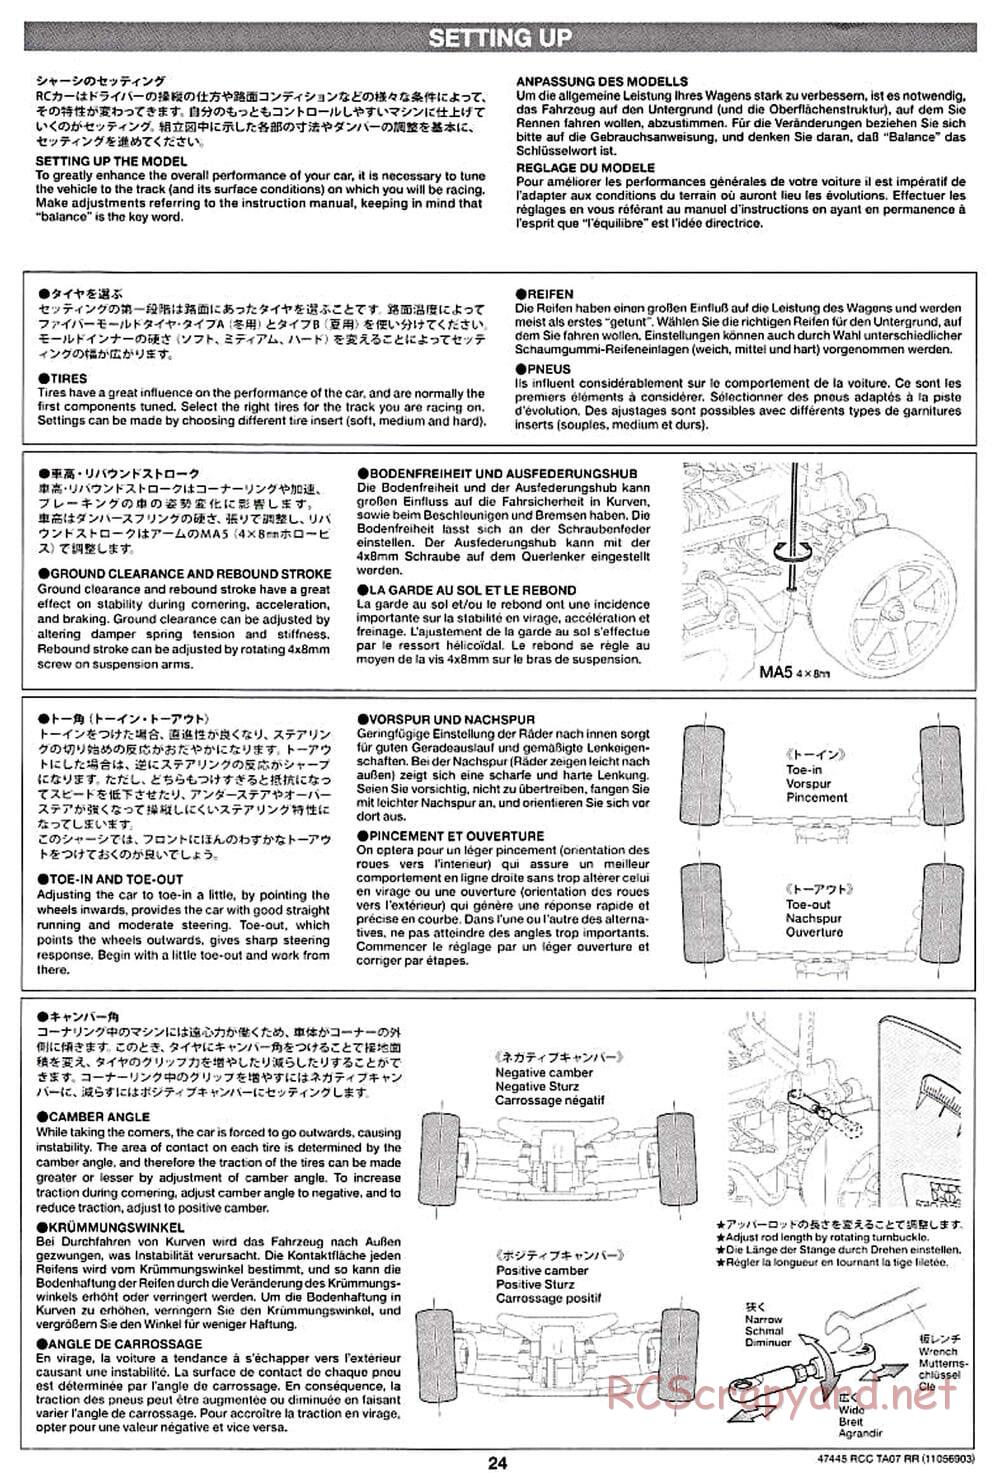 Tamiya - TA07 RR Chassis - Manual - Page 24